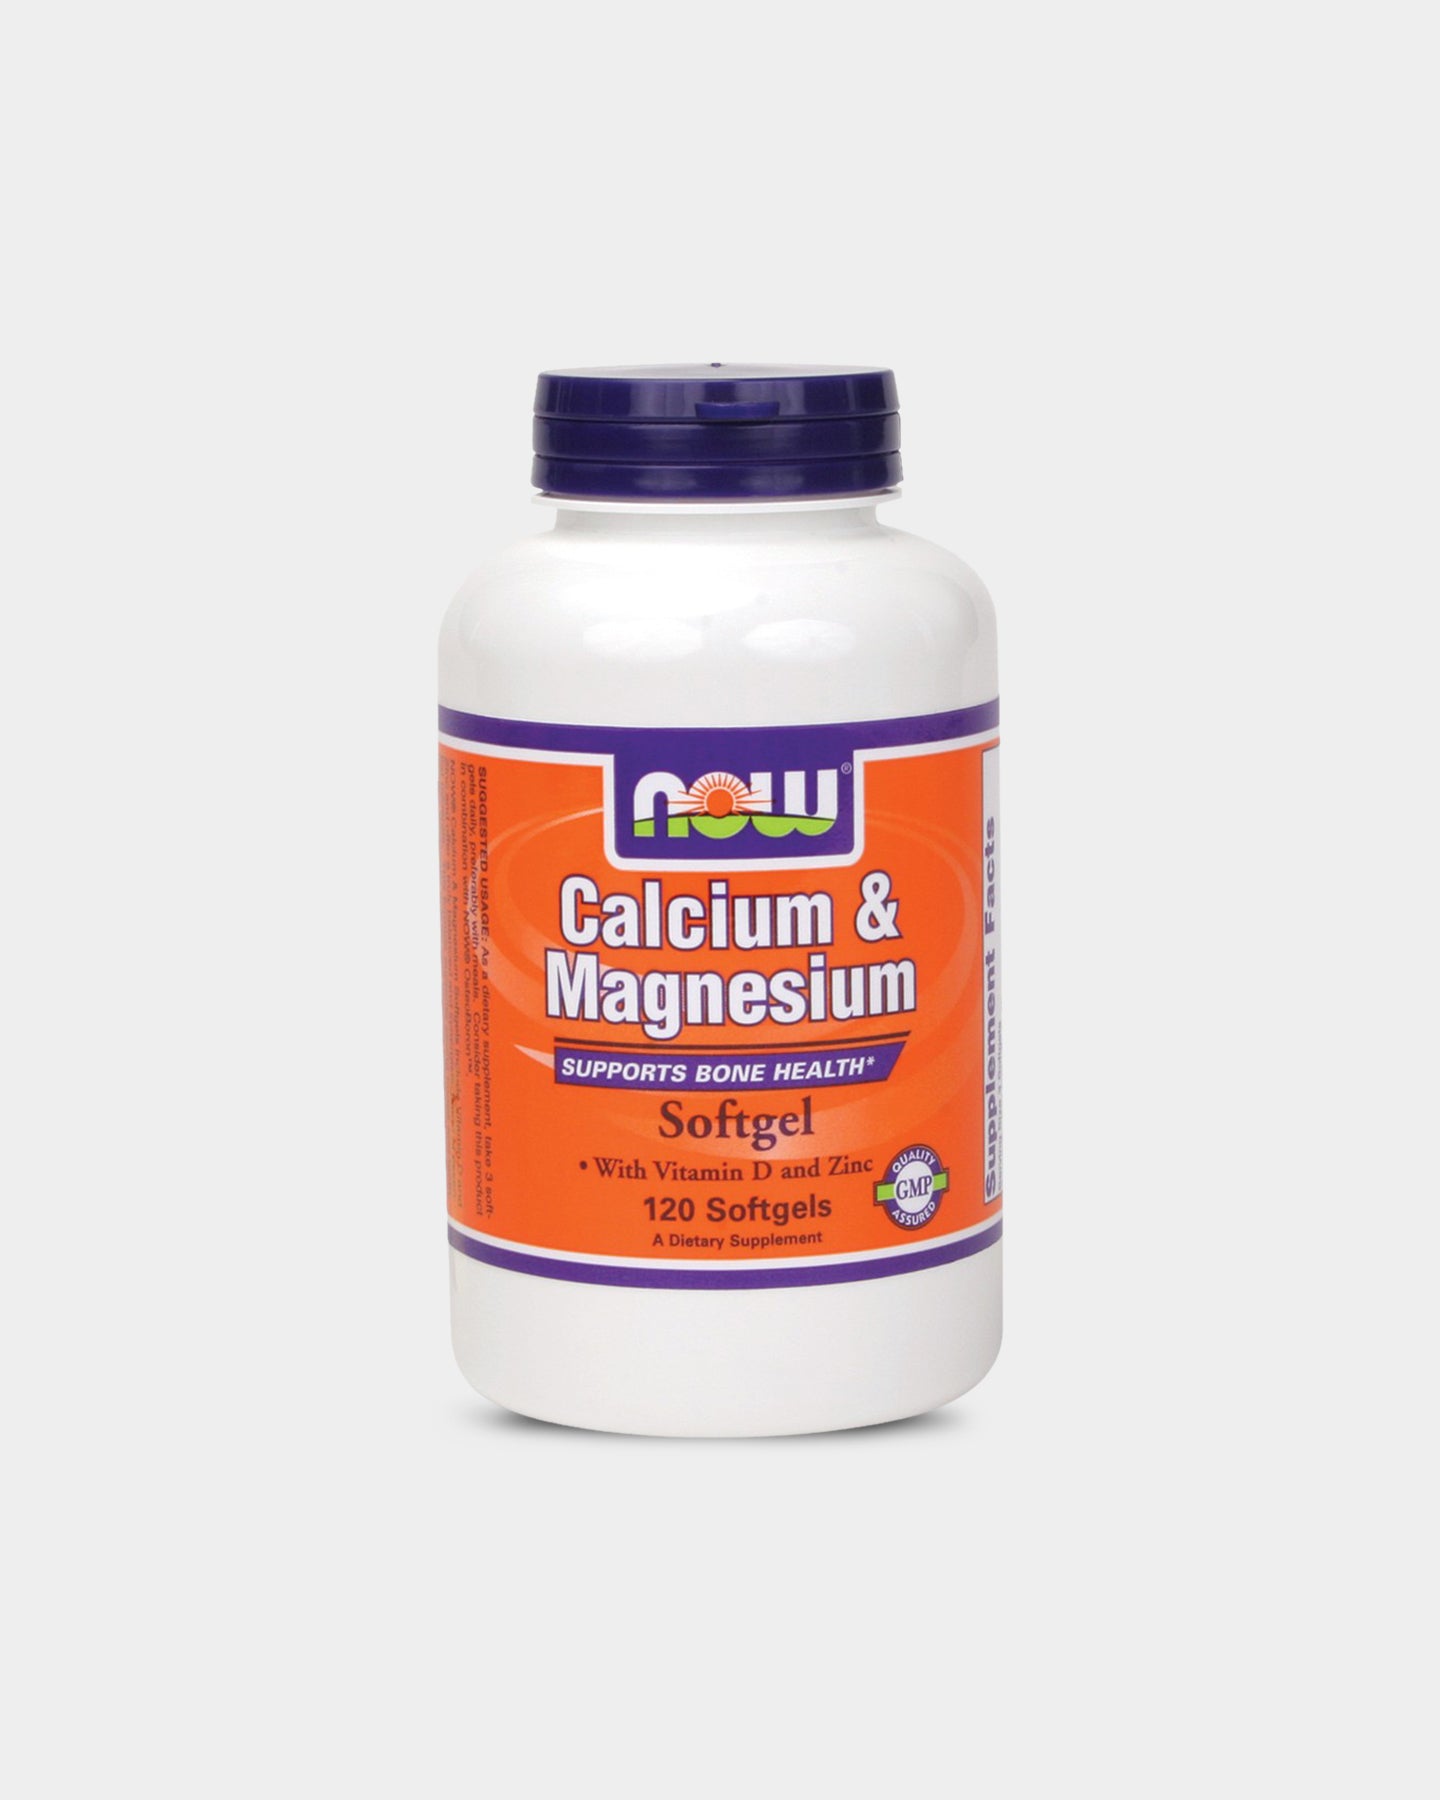 Image of NOW Calcium & Magnesium